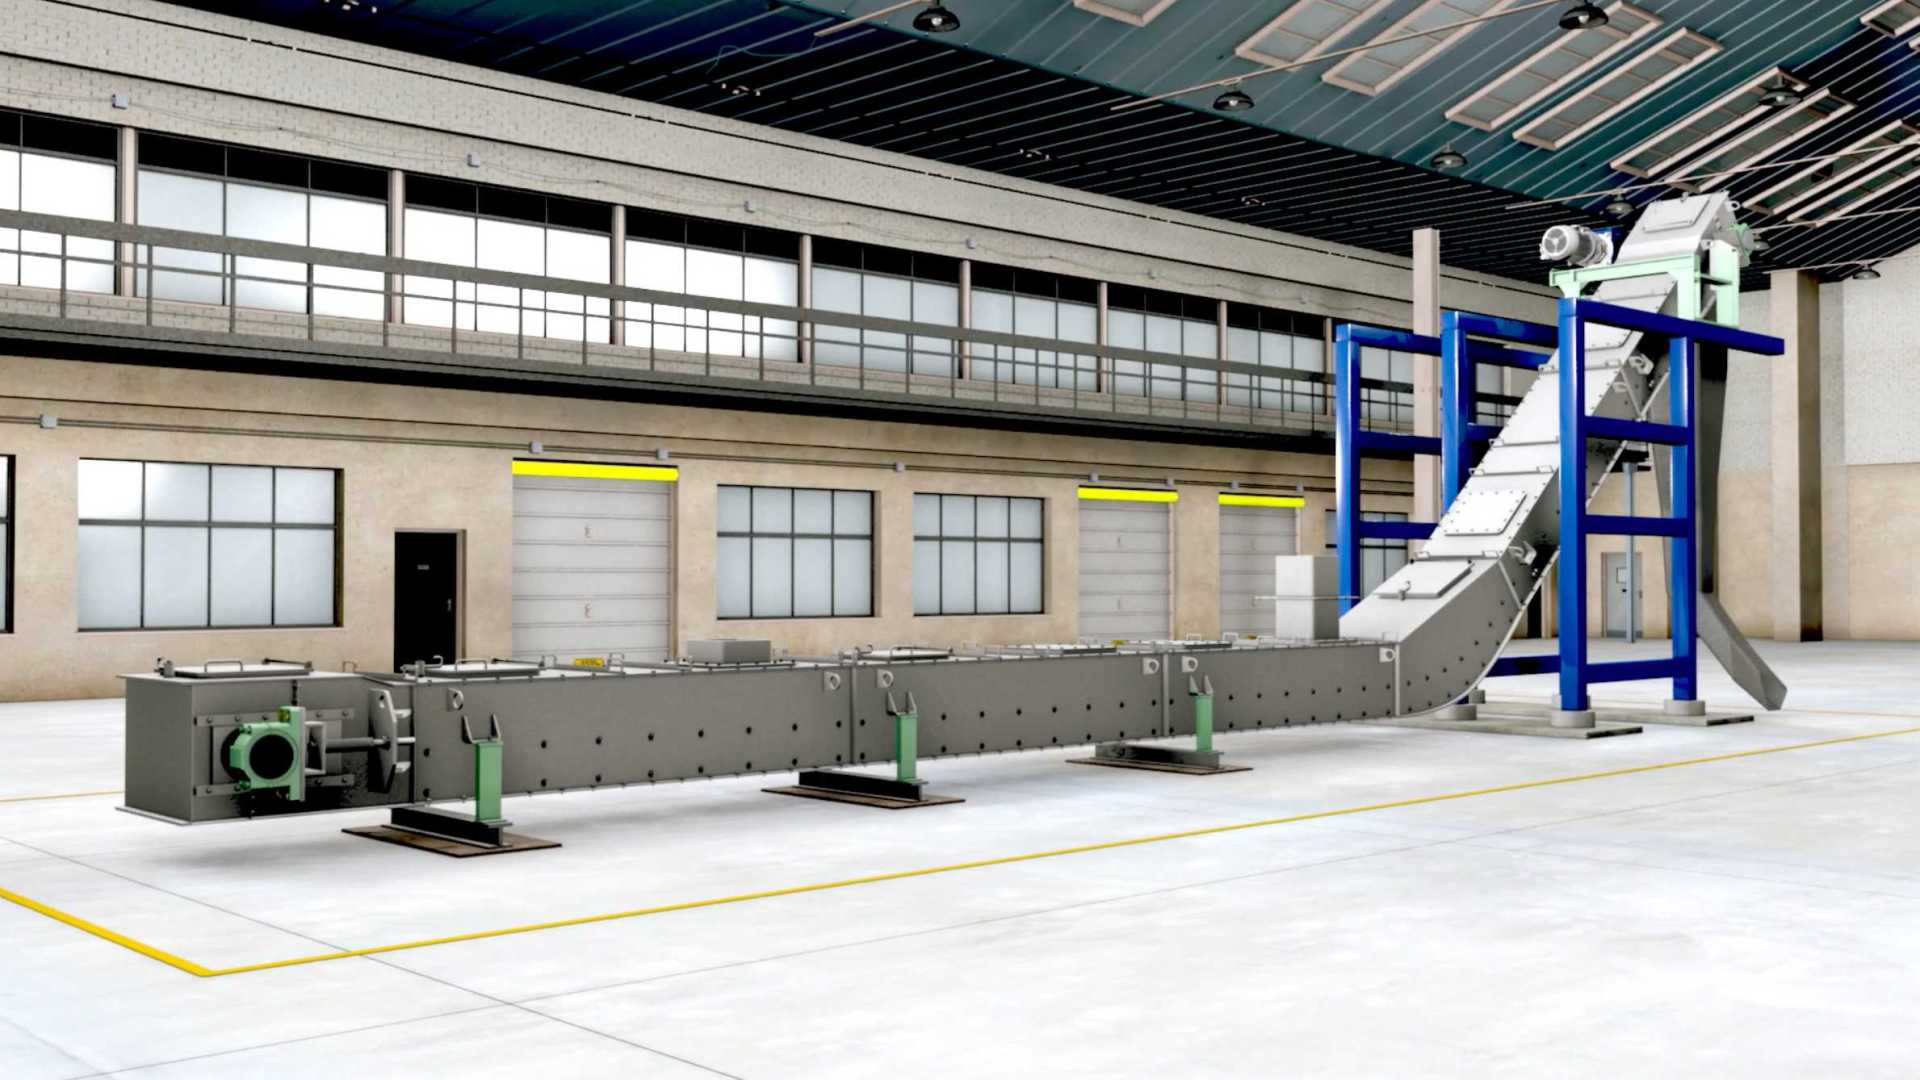 运输机工业生产线机械机床设备演示工艺流程模拟3D三维动画制作公司